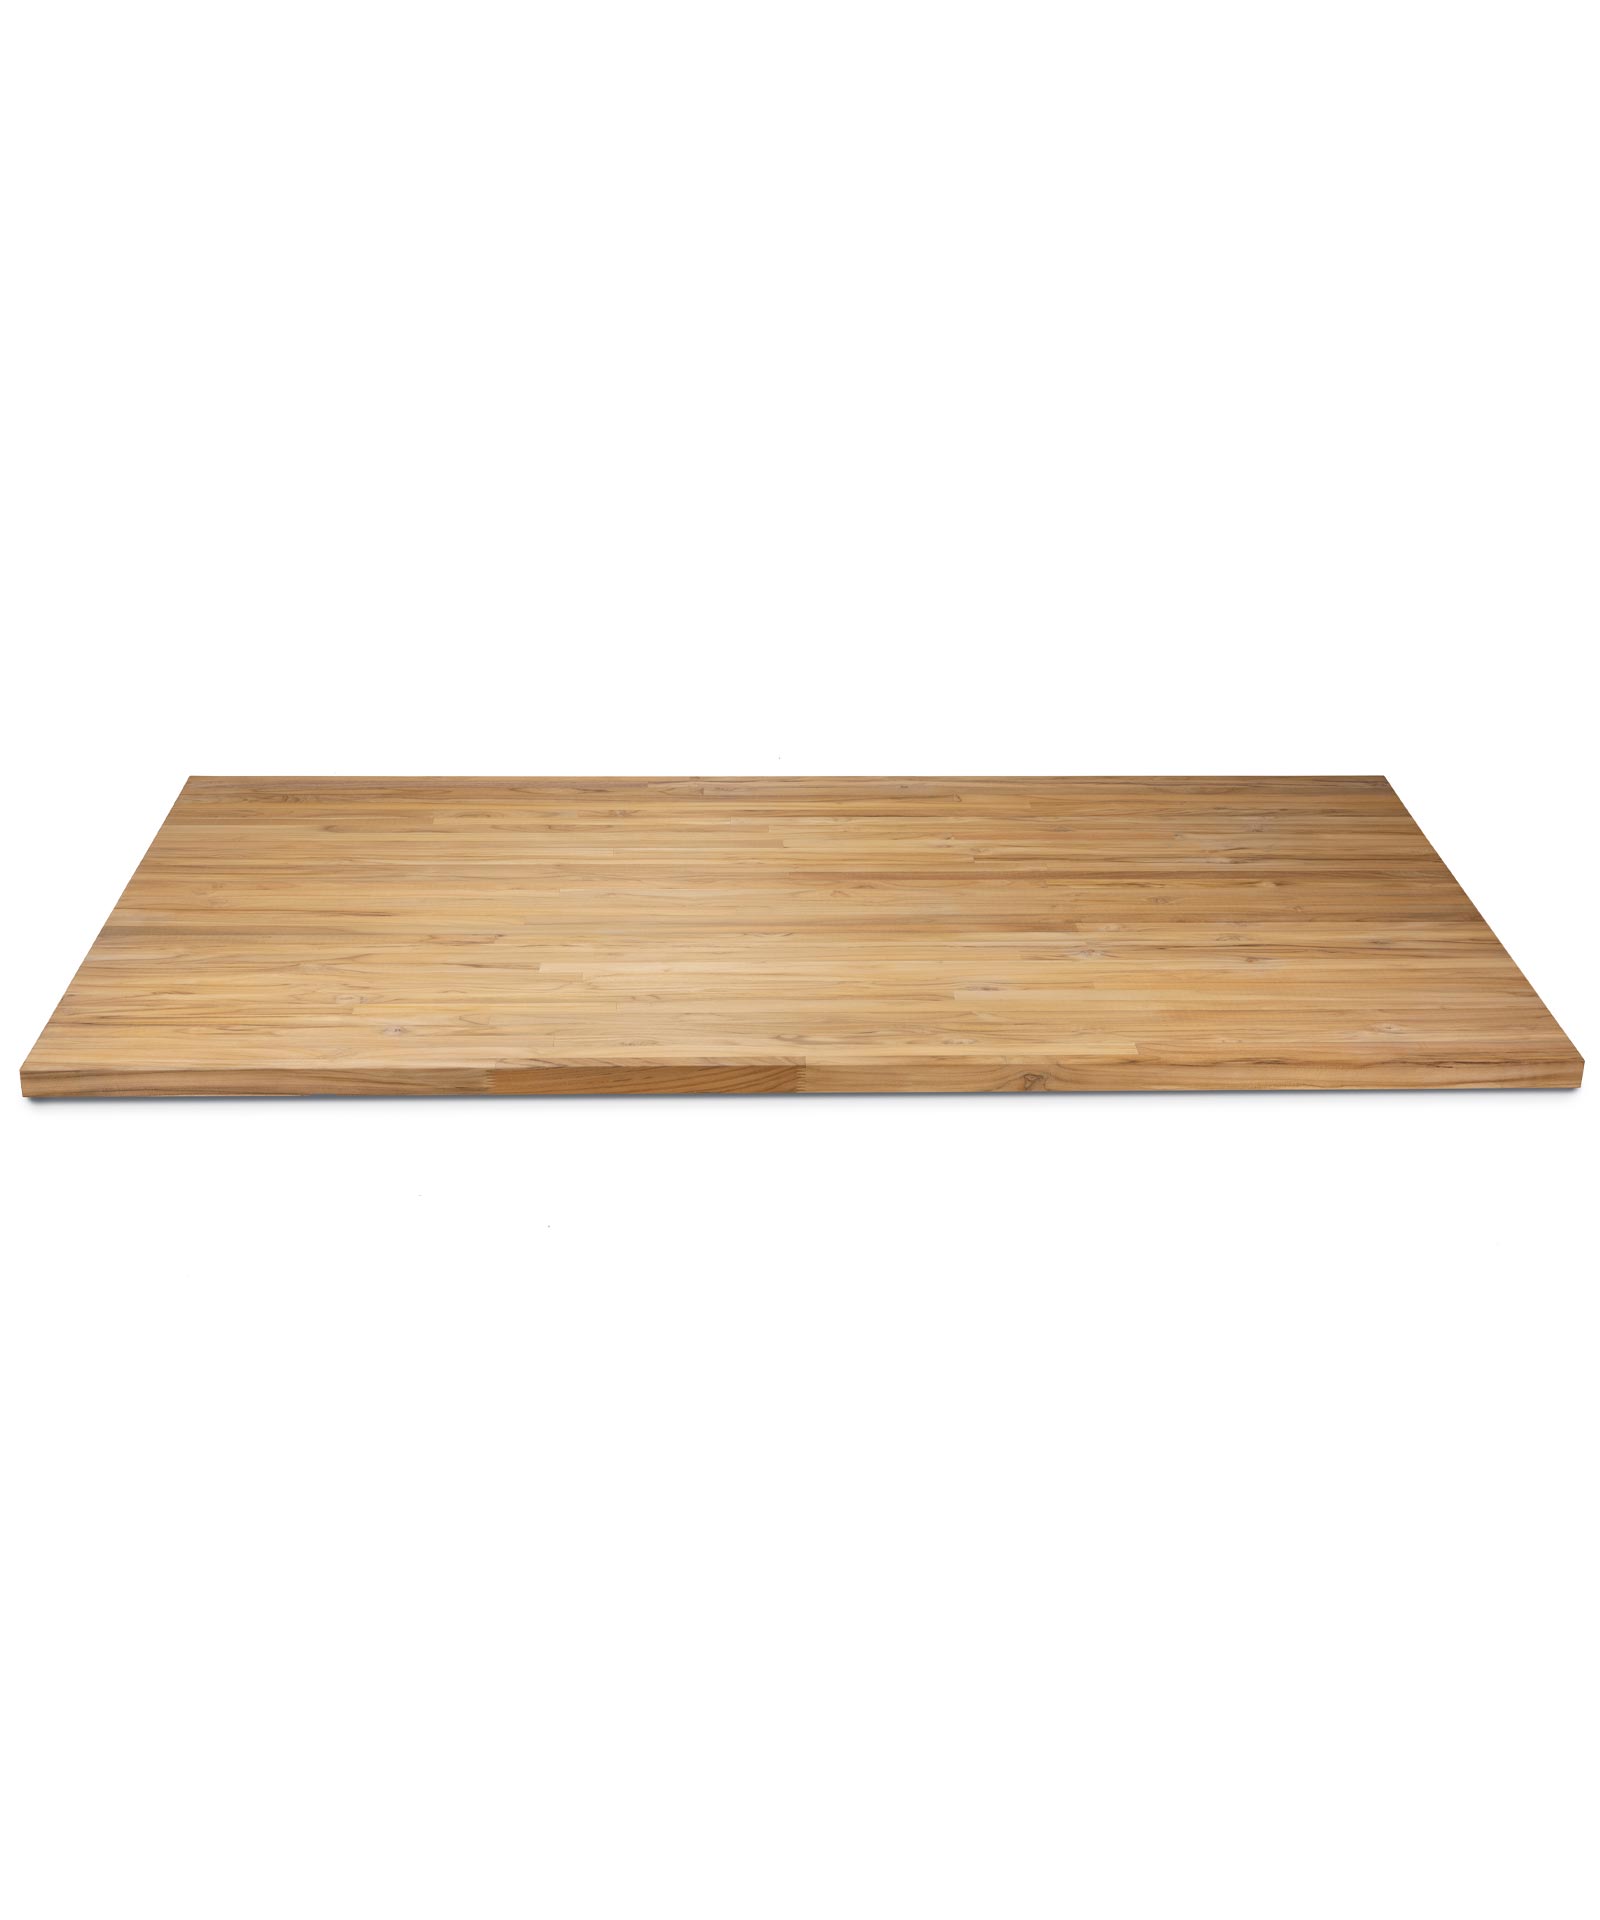 Piano tavolo in teak massello, spessore 40 mm, 240 x 100 cm